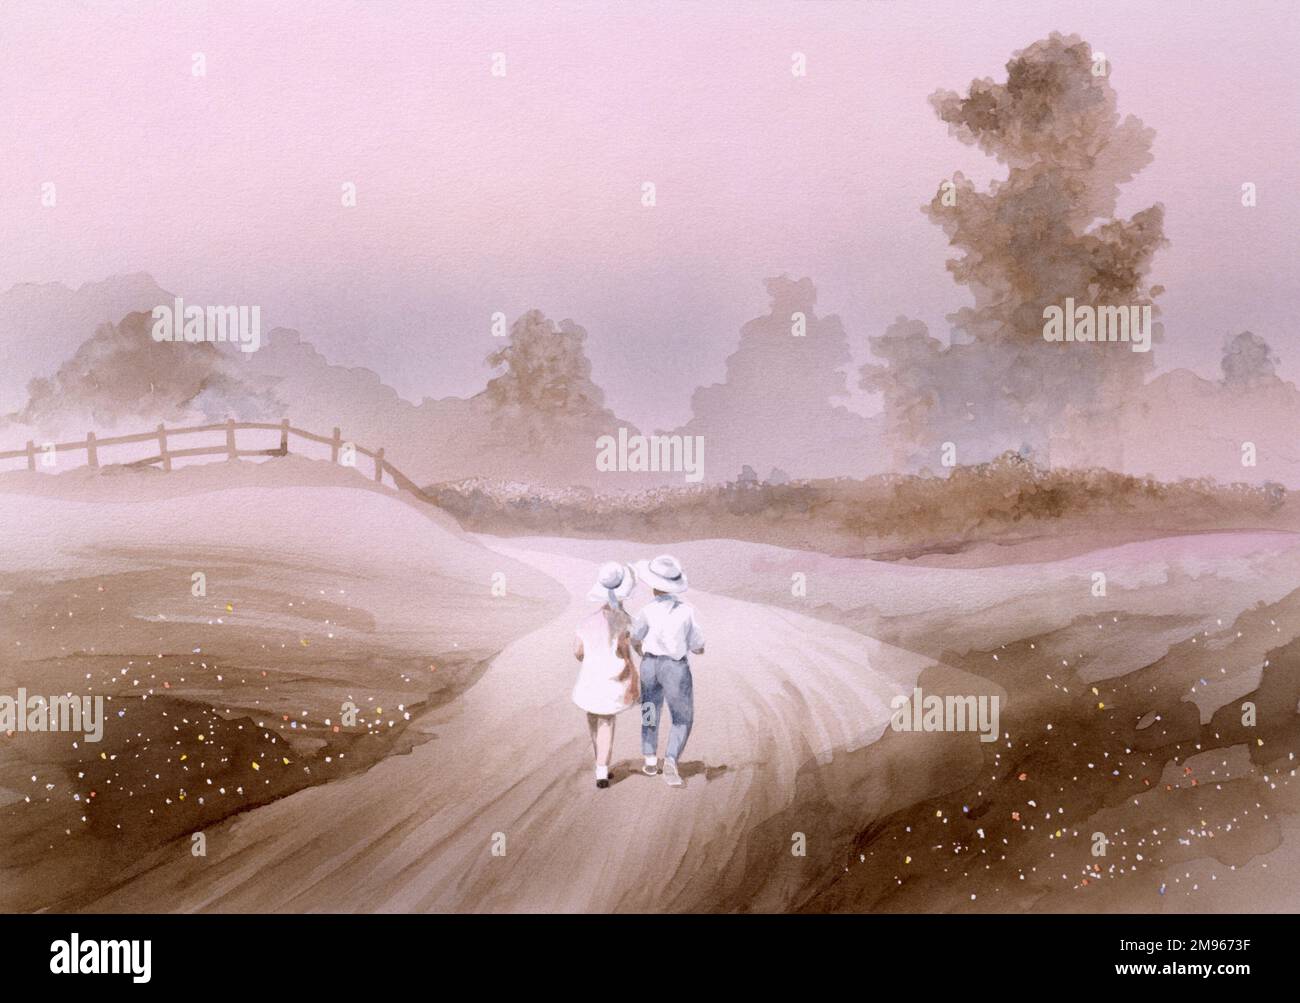 Un garçon et une fille marchent sur une voie de campagne brumeuse au milieu de la distance. L'ambiance est calme et sereine. Peinture par Malcolm Greensmith Banque D'Images